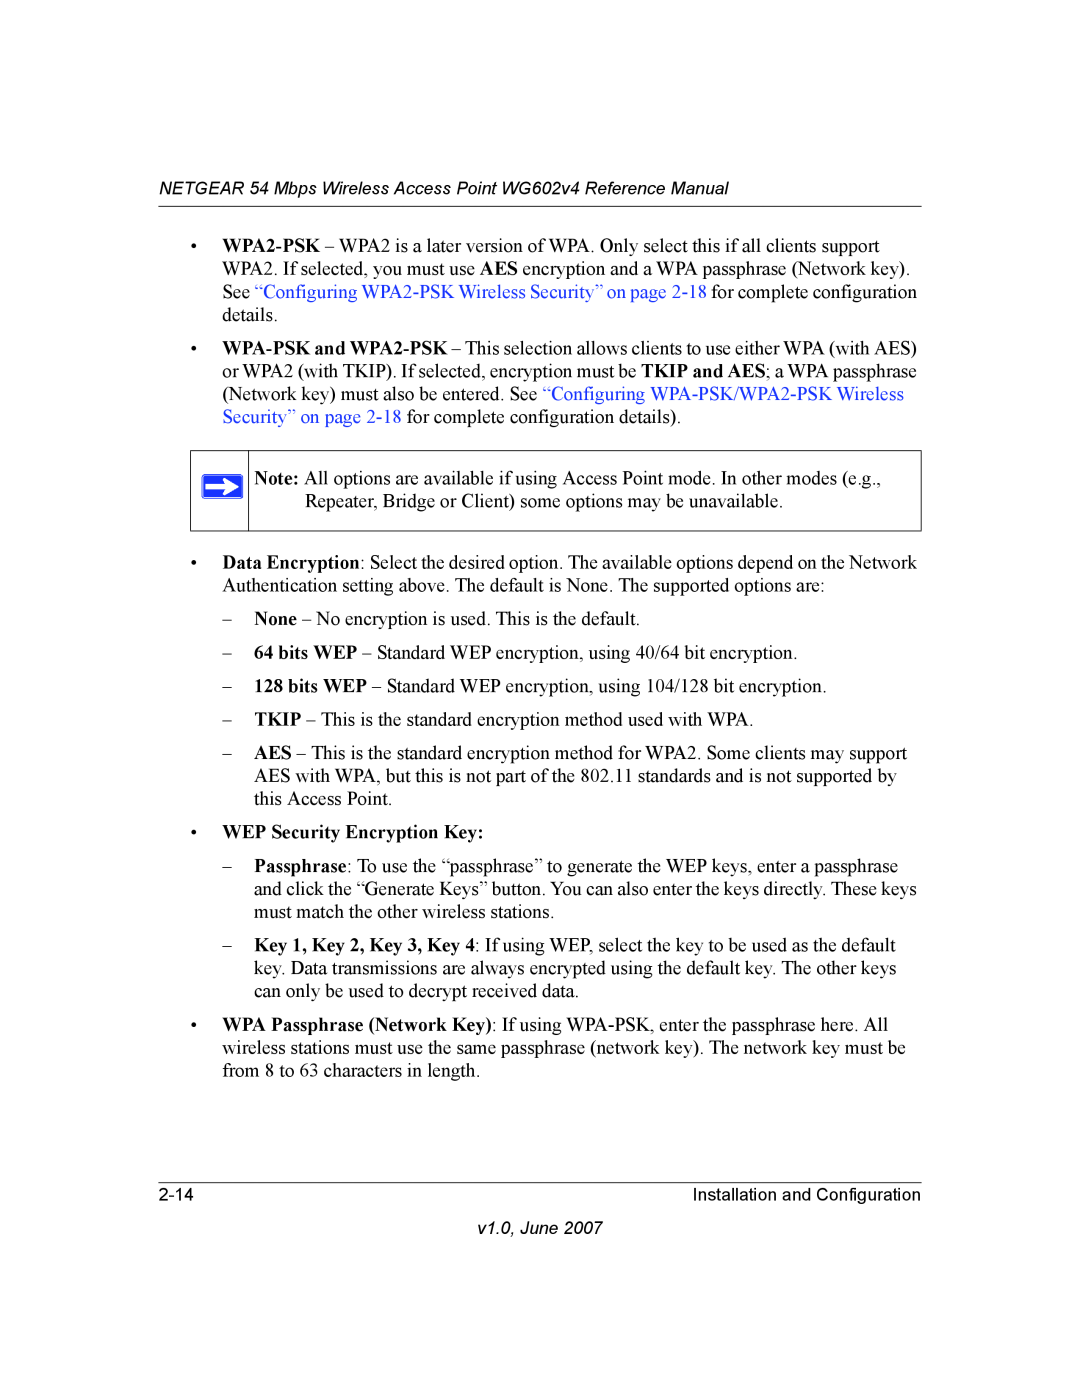 NETGEAR WG602V4 manual WEP Security Encryption Key 